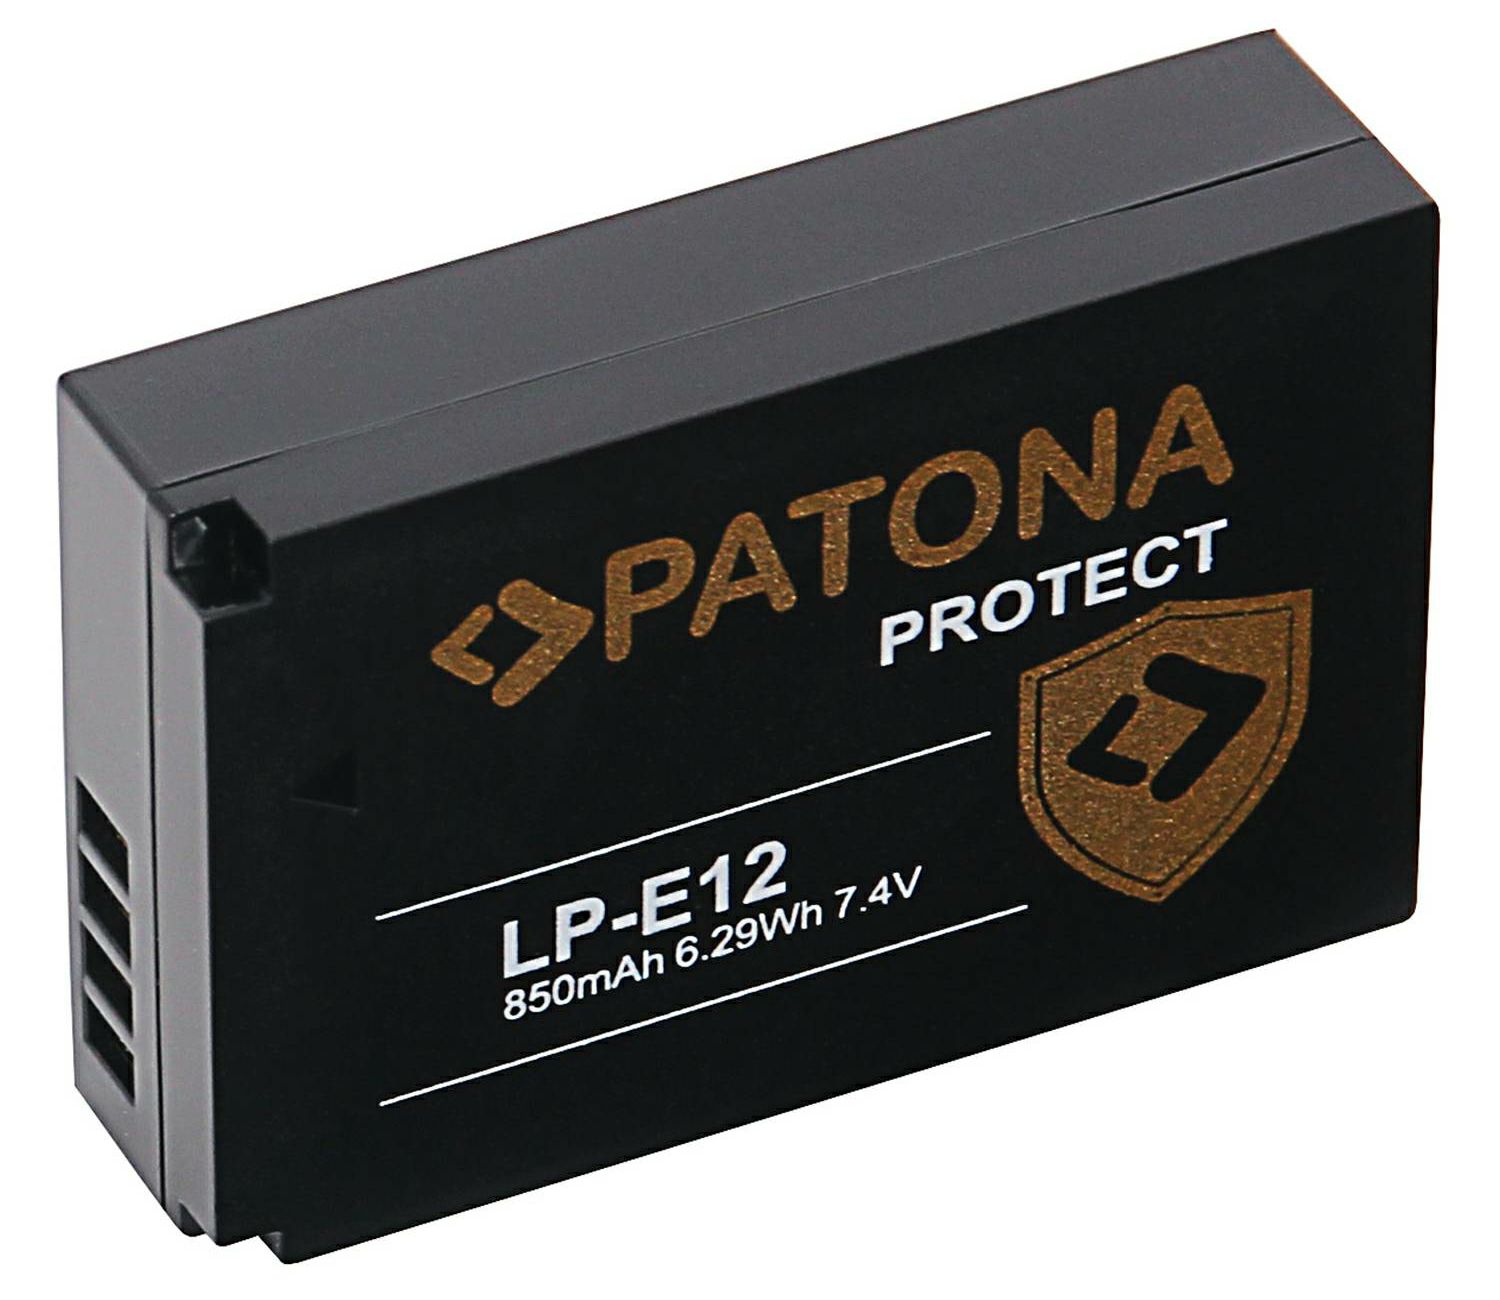 Patona baterija za Canon LP-E12 Protect 850mAh EOS M50, M100